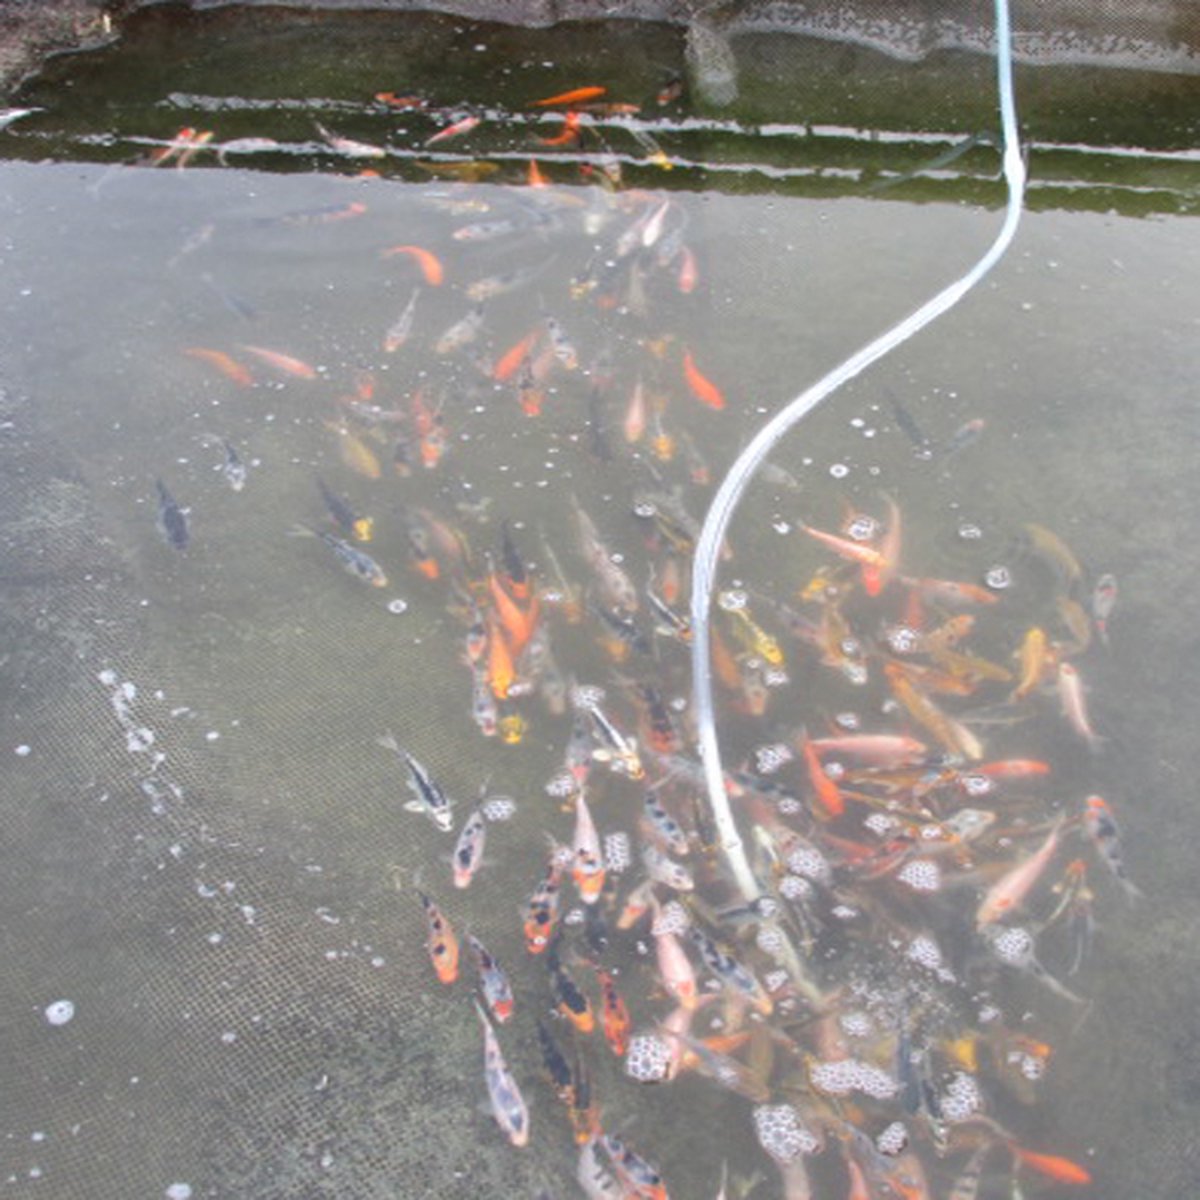 koivoer voor een goede groei 3 mm 15 liter met en proteïnegehalte van 40 % visvoer - visvoer - vissenvoer - vijvervoer - kleurvoer - koikorrel - korrels - voer - drijvend - koikarper – goudvis